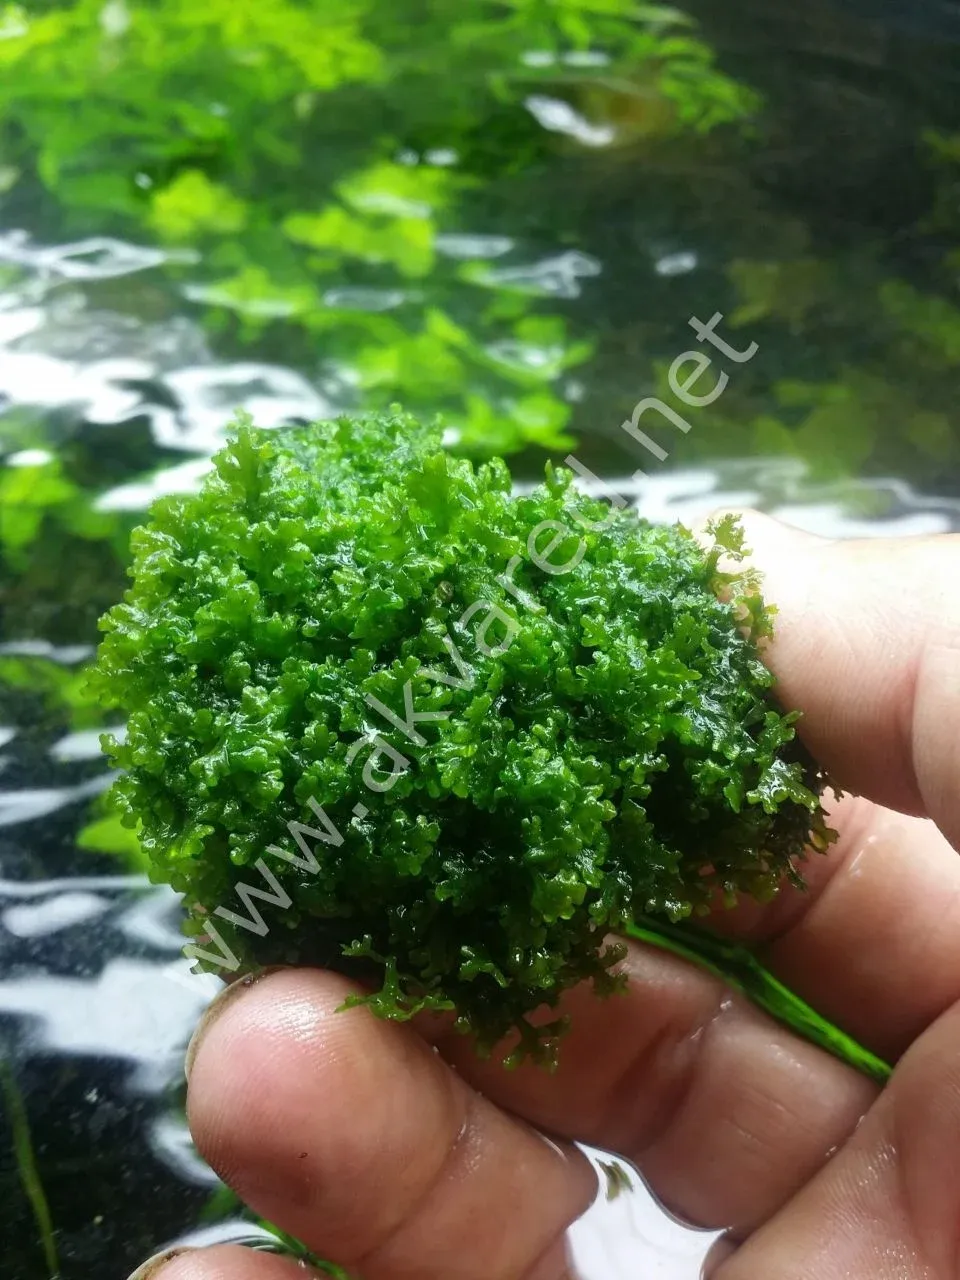 riccardia-chamedryfolia-mini-pellia-moss-1.jpg